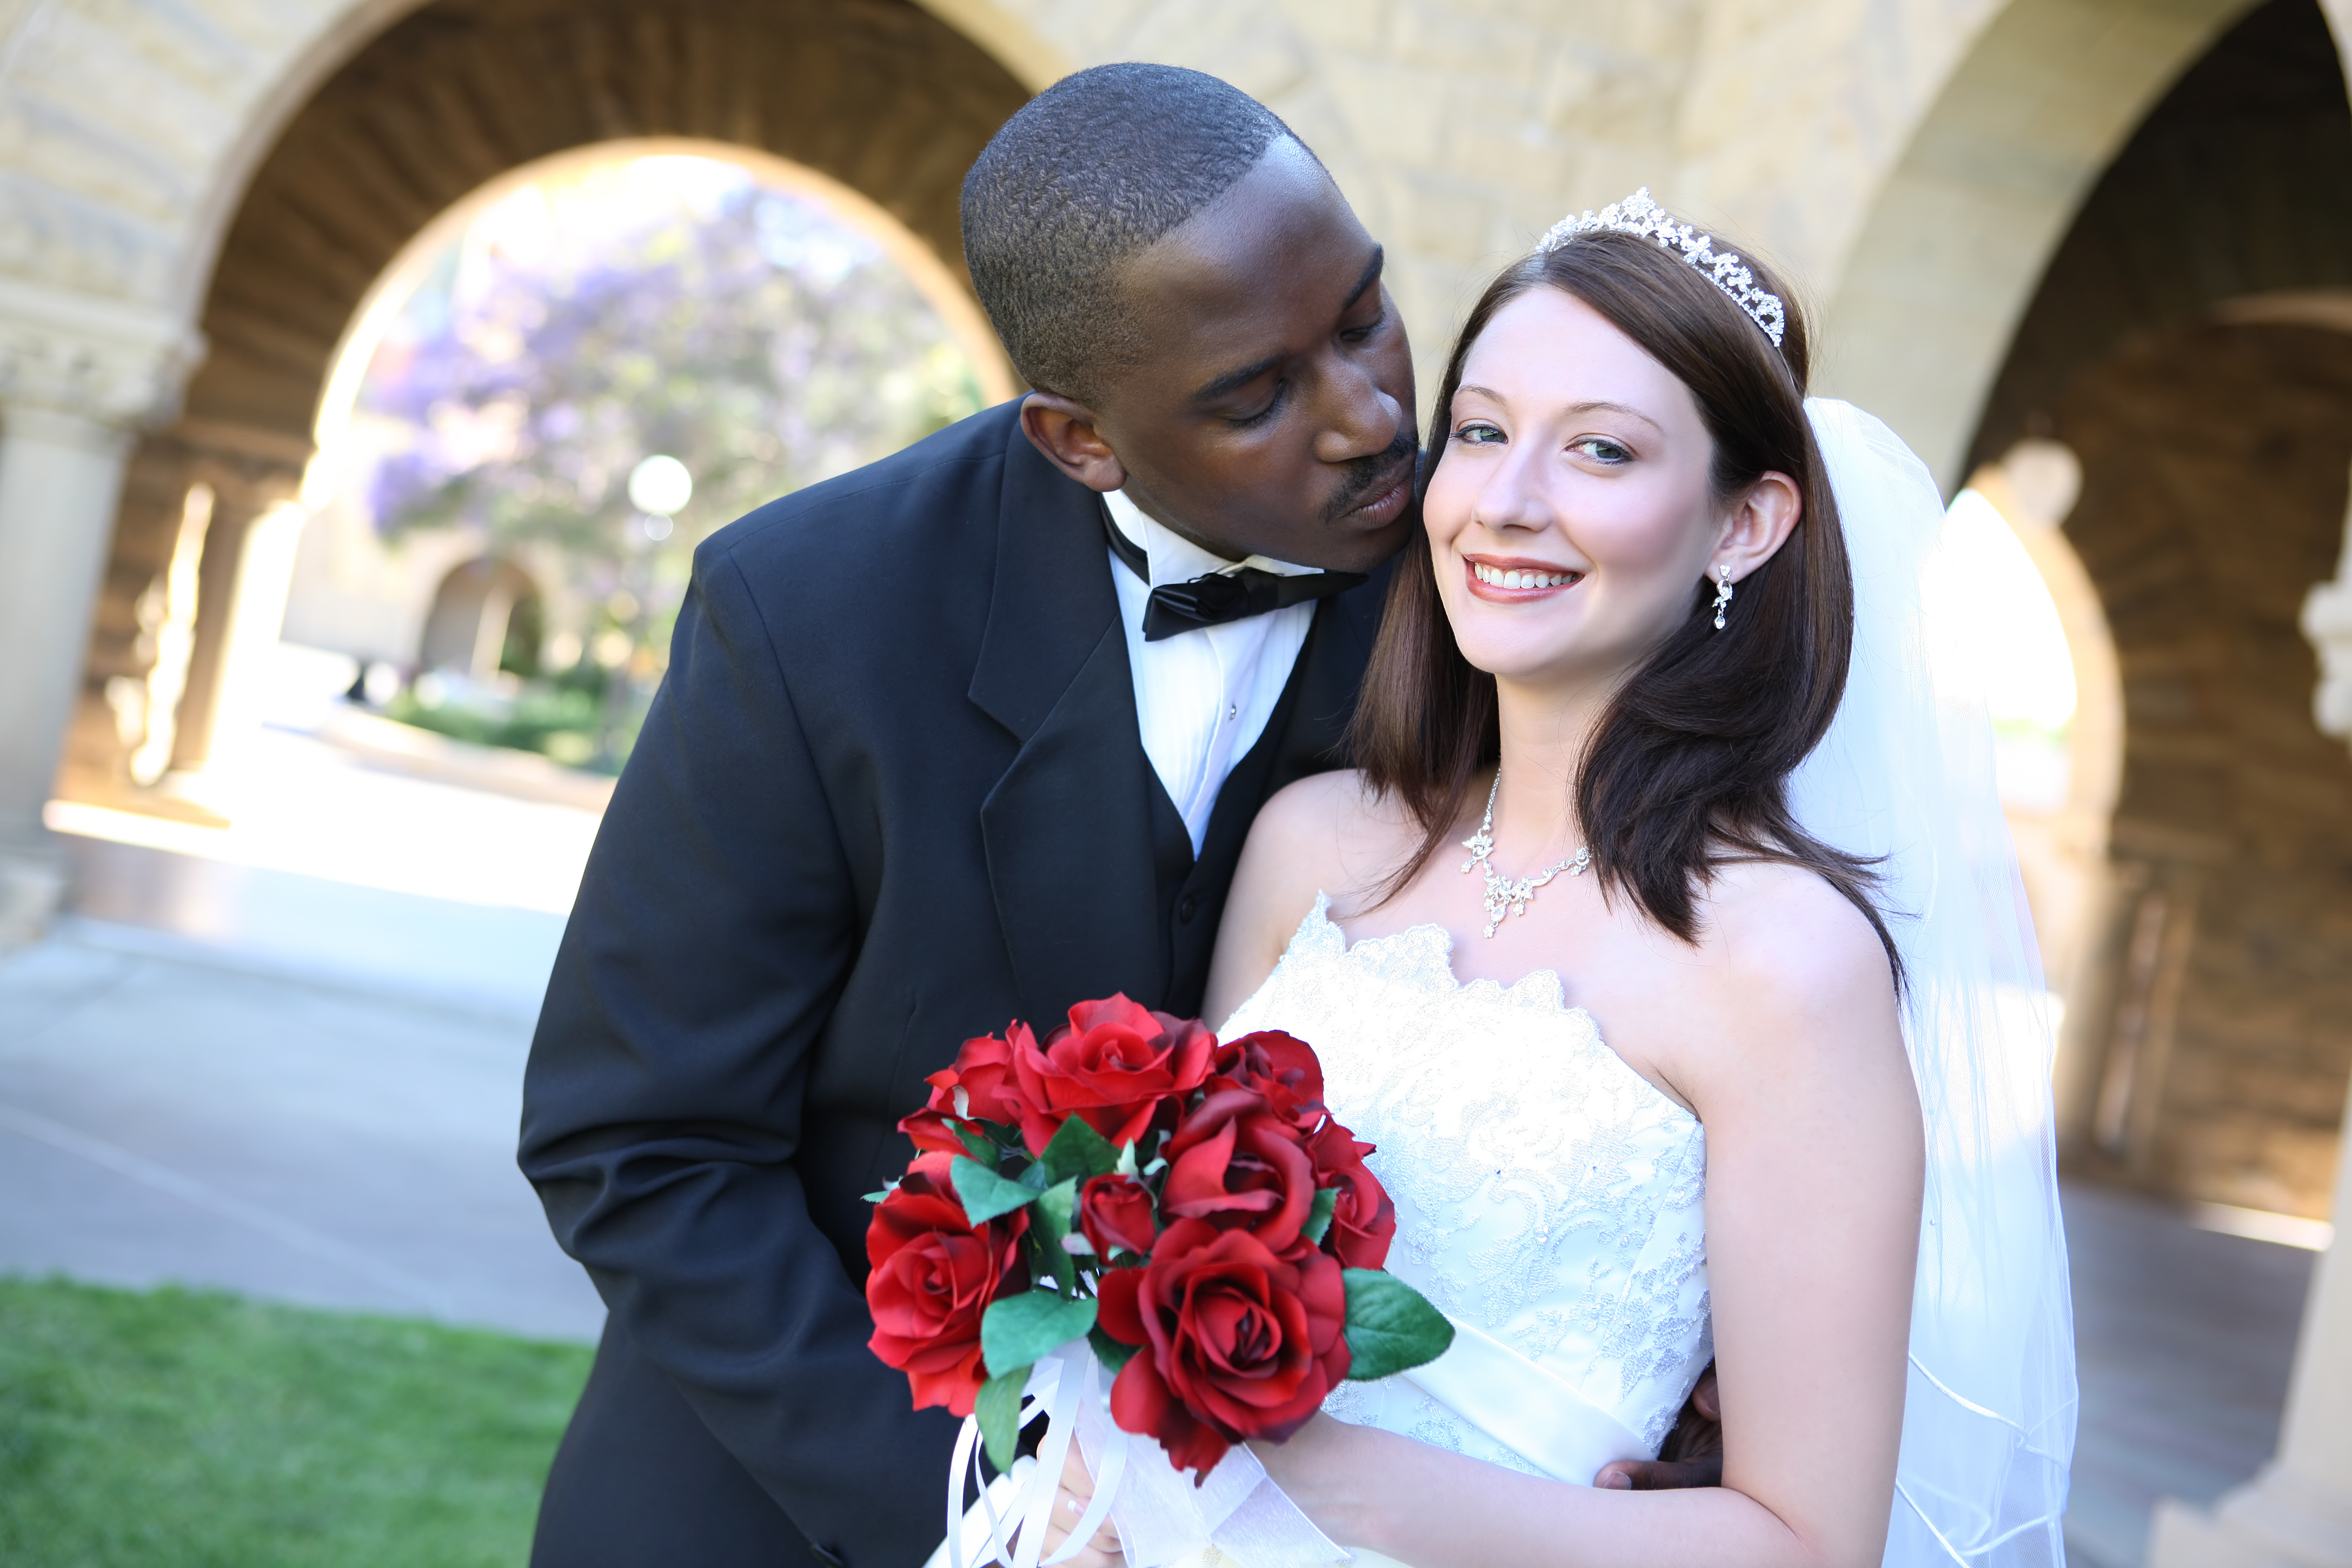 Un couple interracial heureux le jour de son mariage | Source : Shutterstock